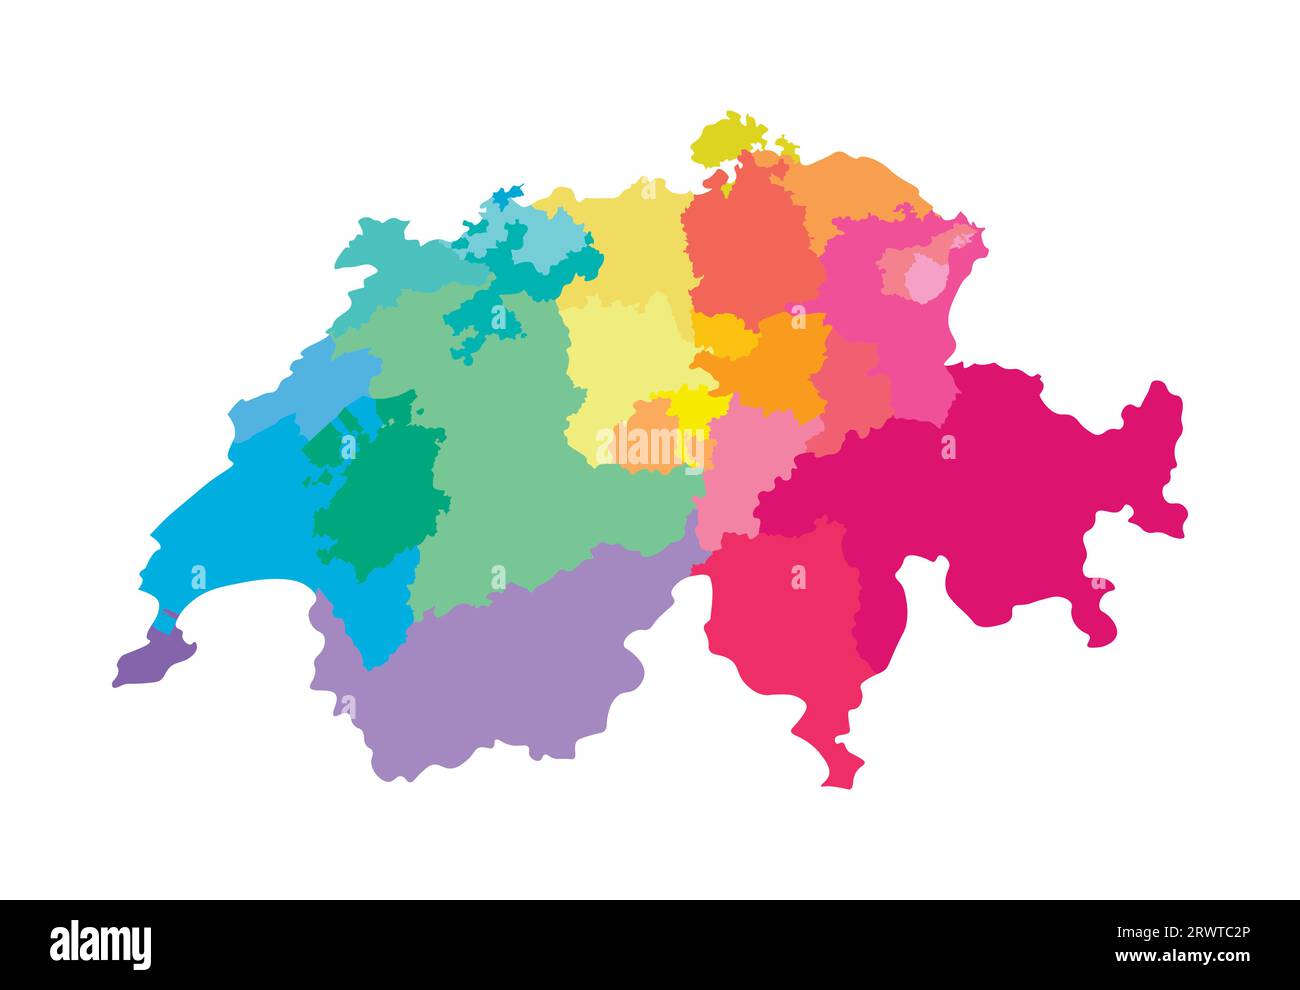 Illustrazione vettoriale isolata della mappa amministrativa semplificata della Svizzera. Confini delle regioni. Silhouette multicolore. Illustrazione Vettoriale